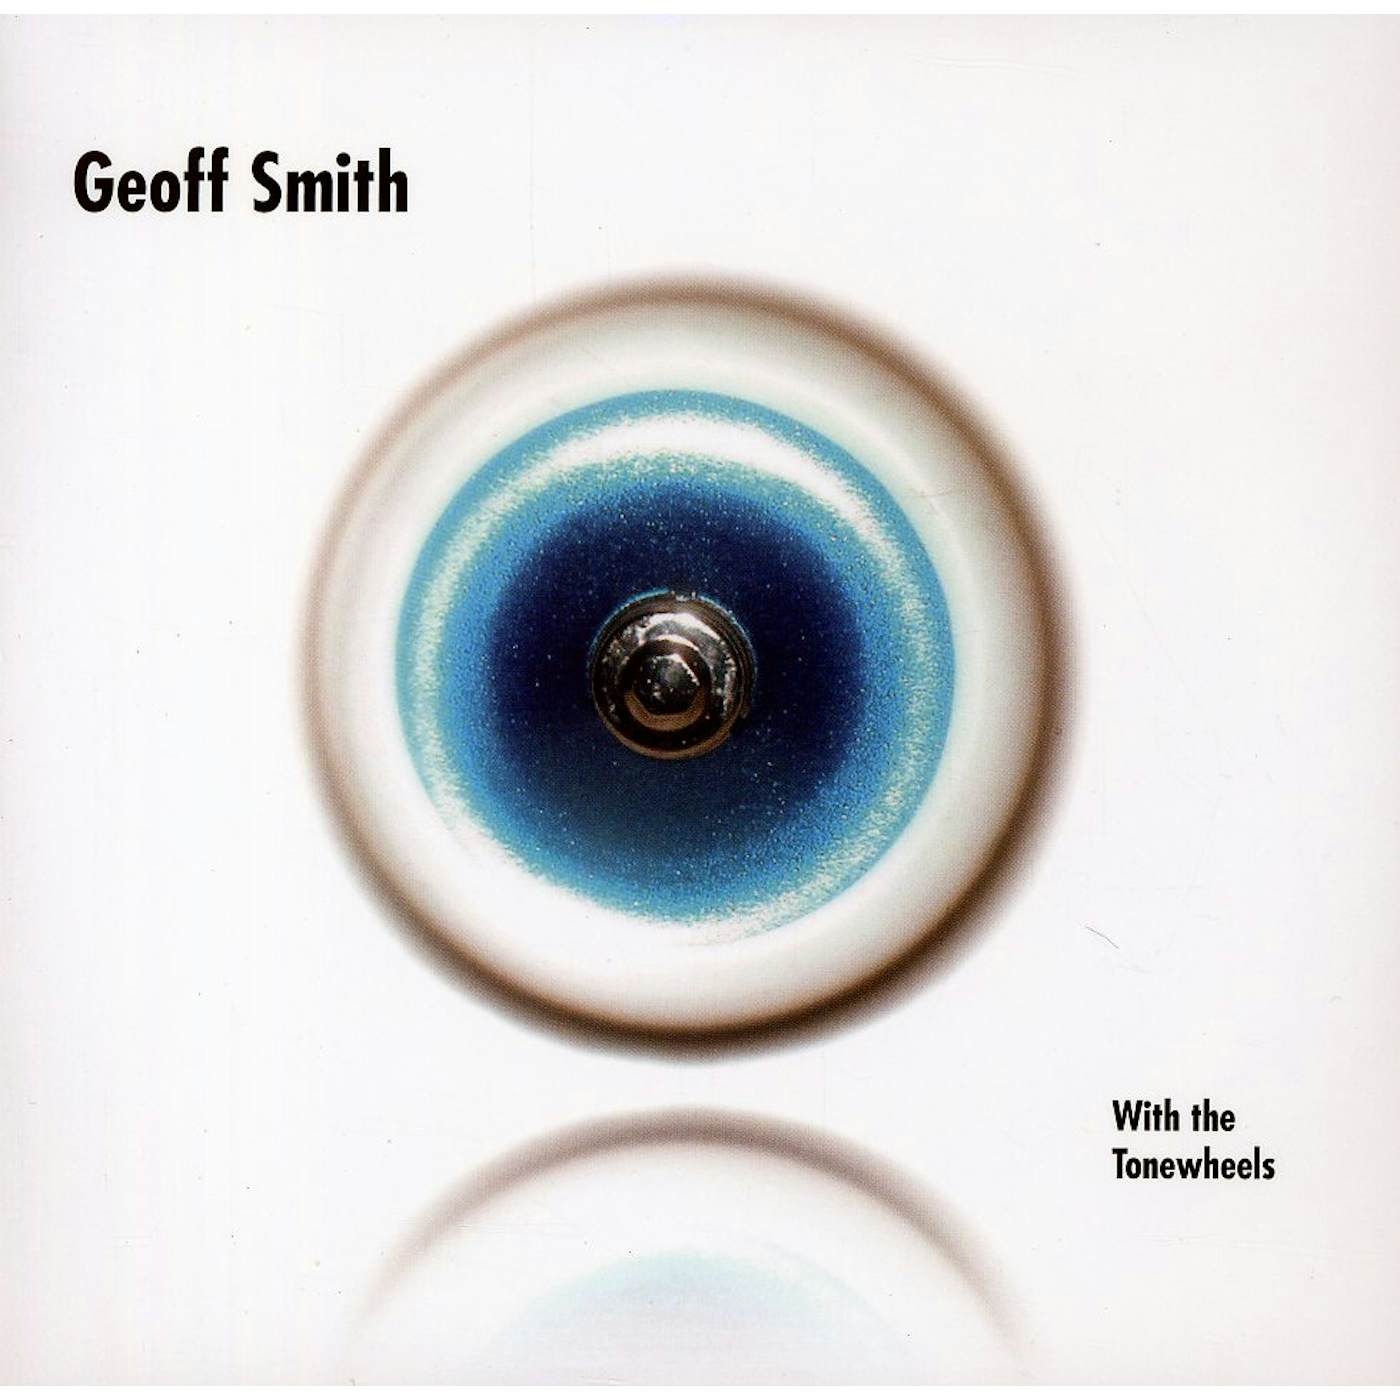 GEOFF SMITH & THE TONEWHEELS CD